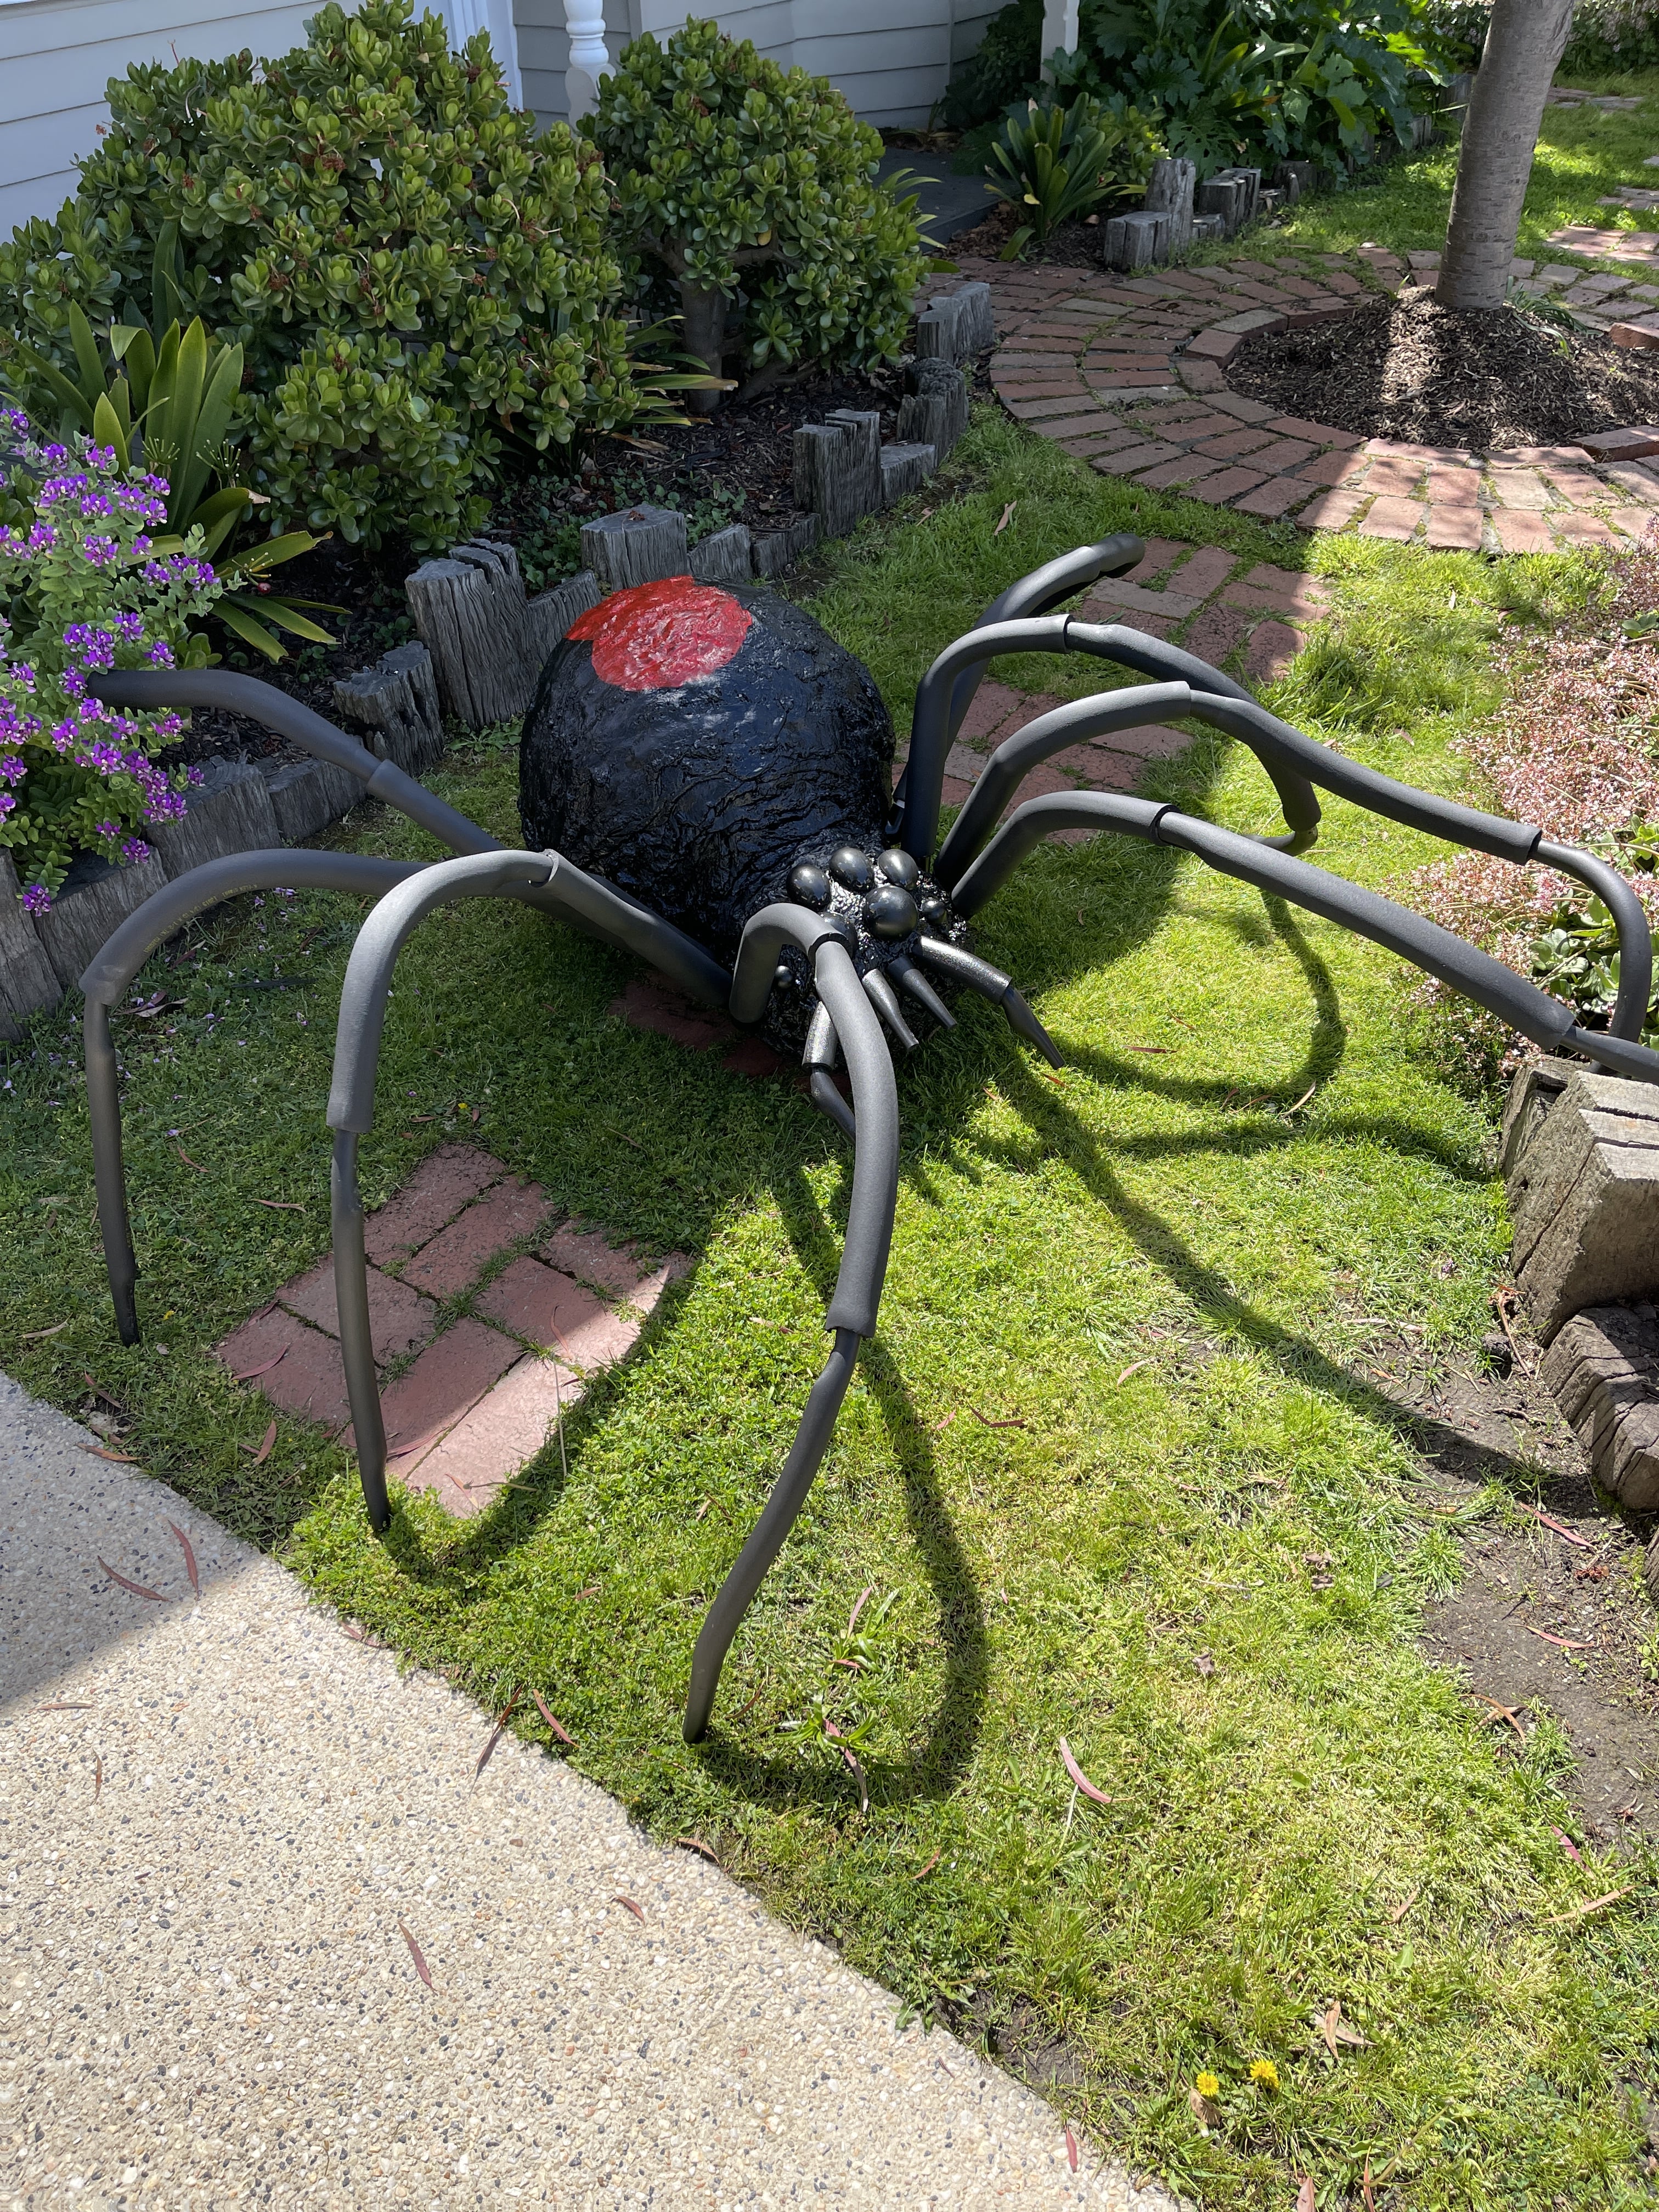 How to Make a DIY Giant Spider | Halloween Decor | POPSUGAR Home